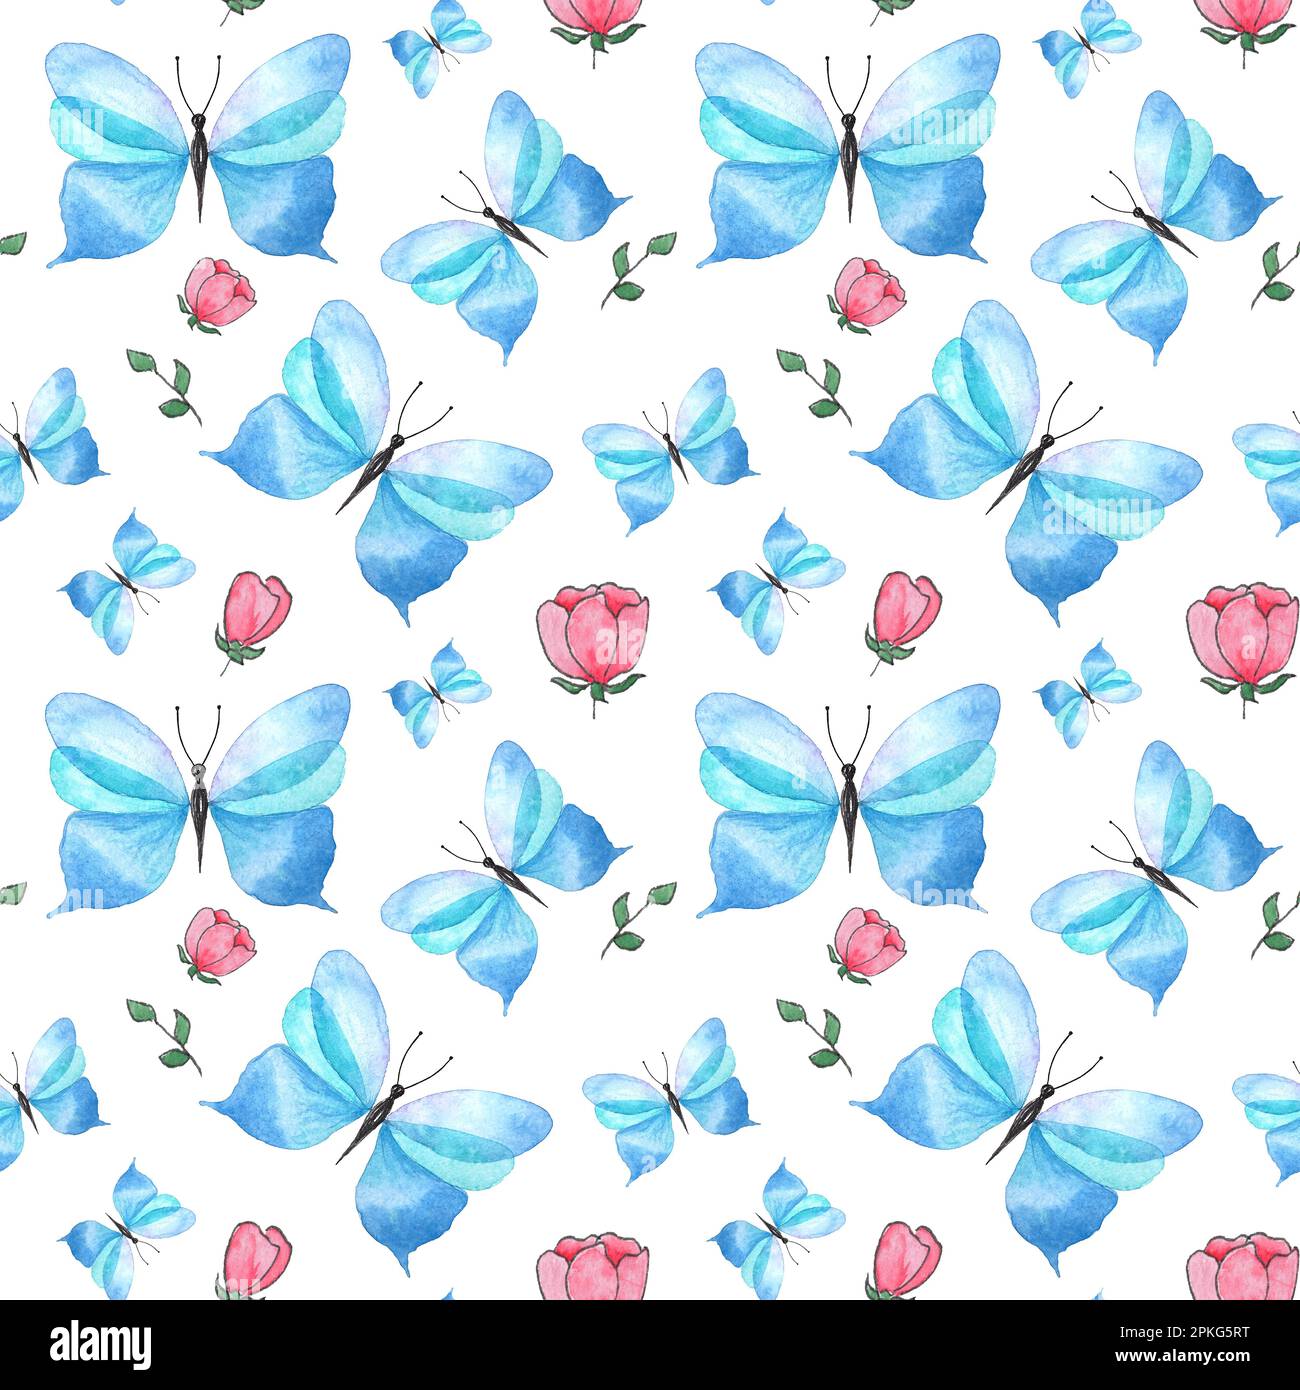 Aquarelle motif sans couture fleurs sauvages rouges, papillon bleu sur fond blanc, illustration peinte à la main de style botanique, pour l'impression de tissus Banque D'Images